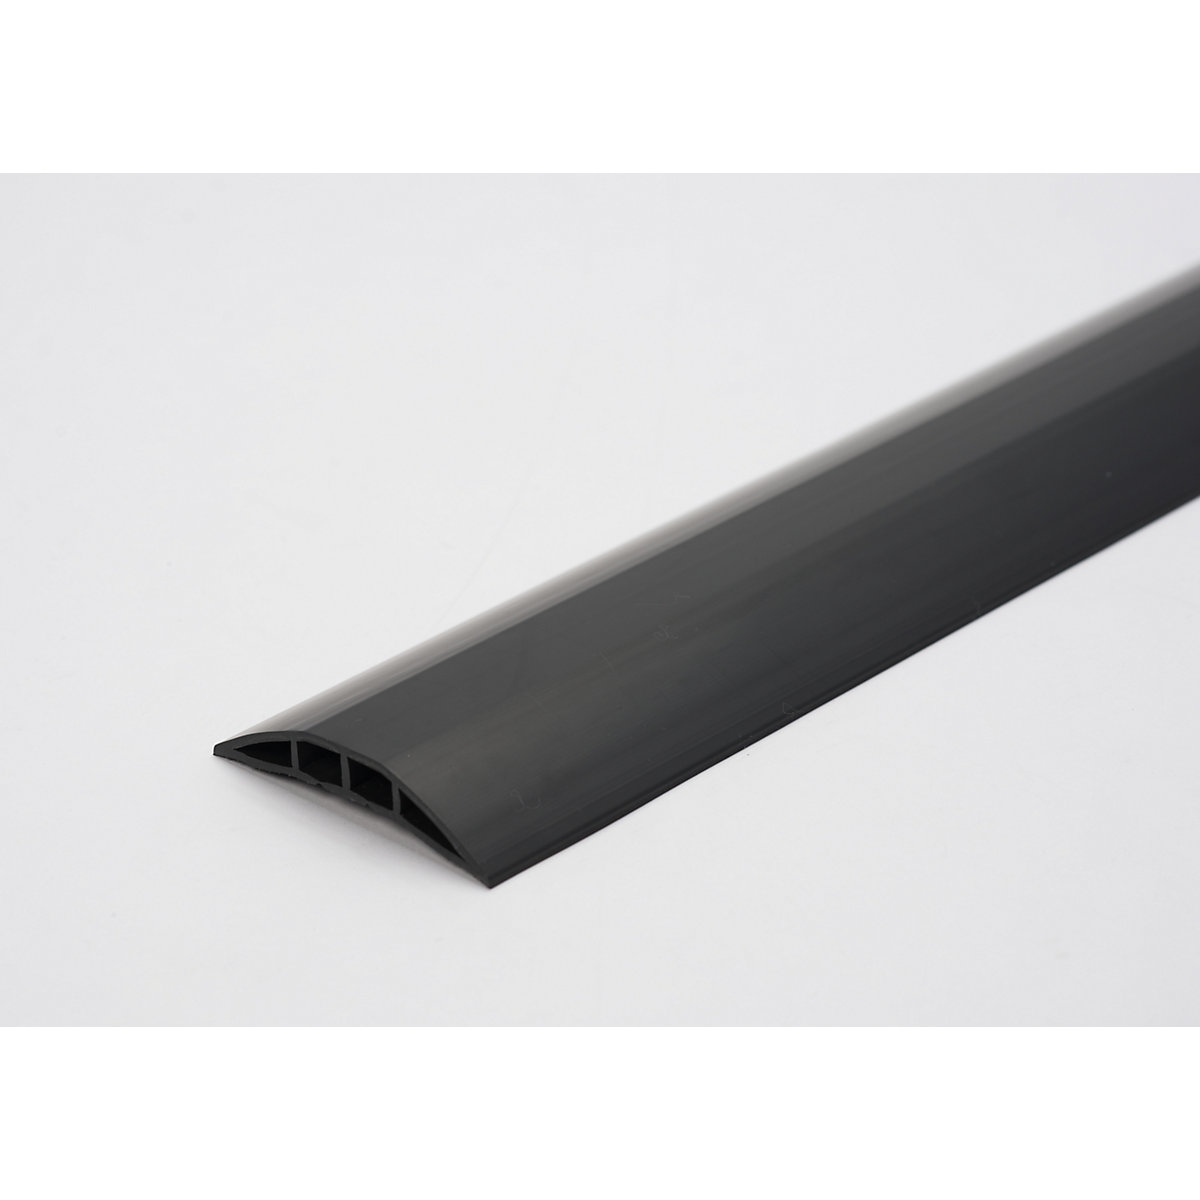 Plastový kabelový můstek, pro kabely a hadice do Ø 7,5 mm, černý, 2 komory, délka 1,5 m